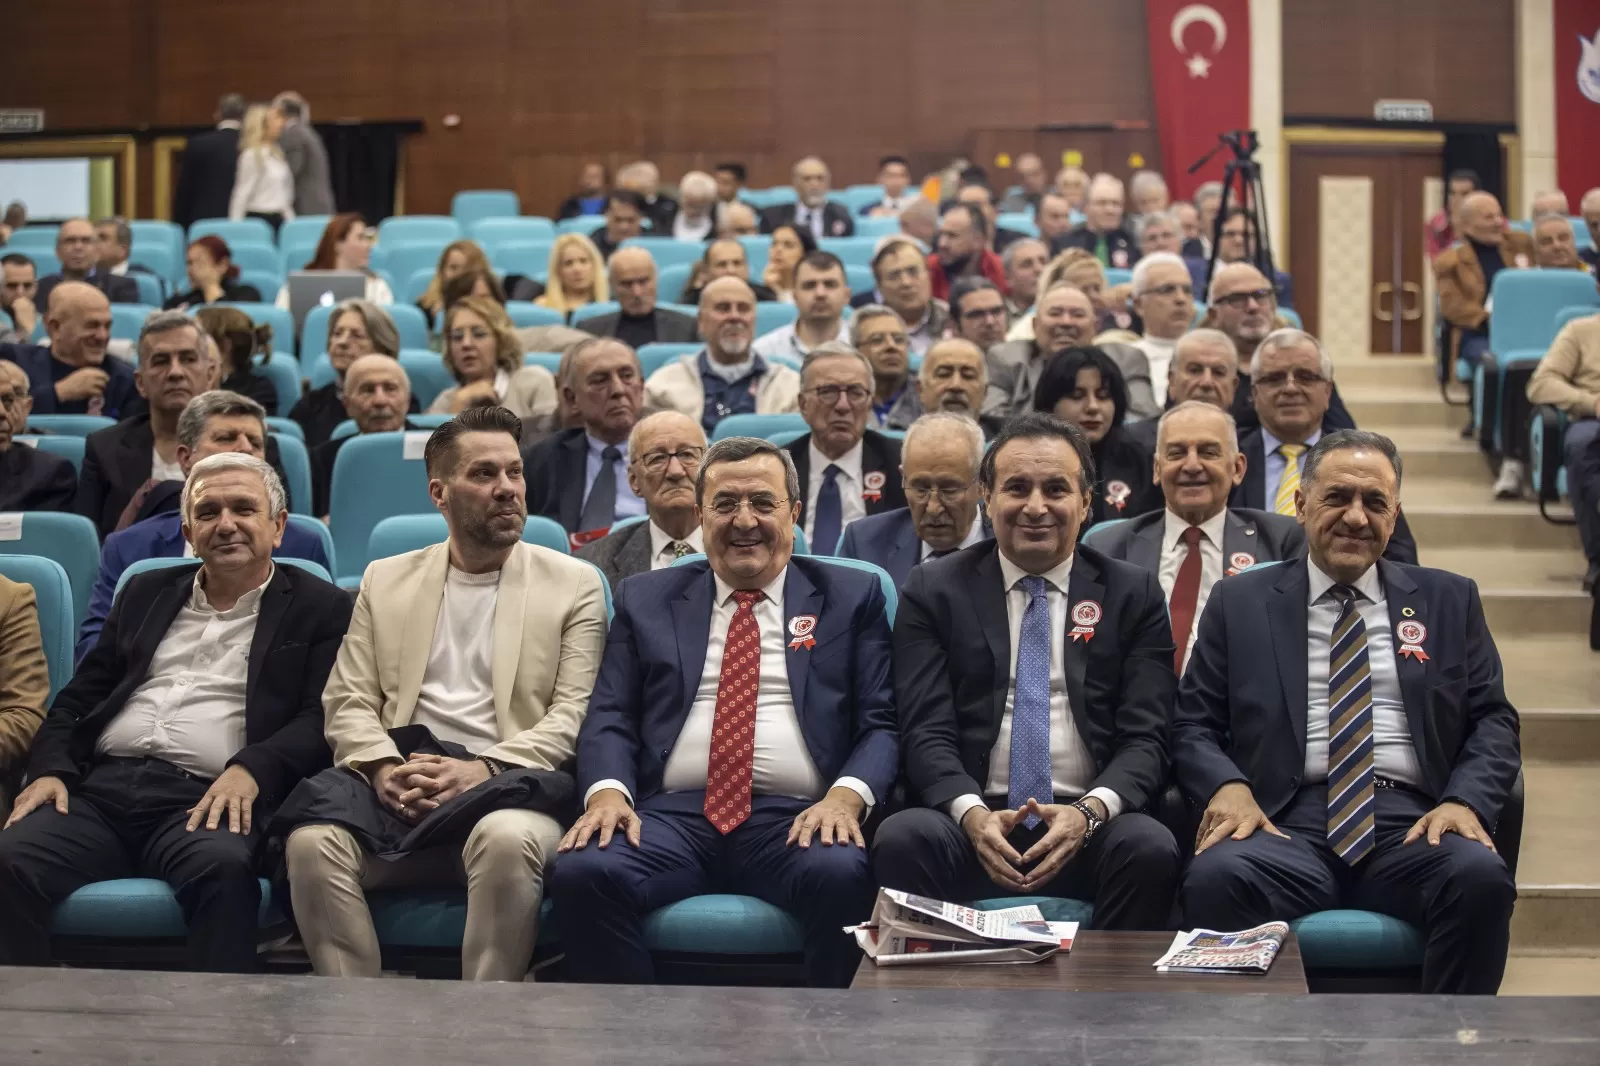 Türkiye Futbol Adamları Derneği İzmir Şubesi ve Konak Belediyesi'nin katkılarıyla düzenlenen "İnsanlar Yaşarken de Anılmalıdır" etkinliğinin ödül töreni, İzmir'de gerçekleşti.